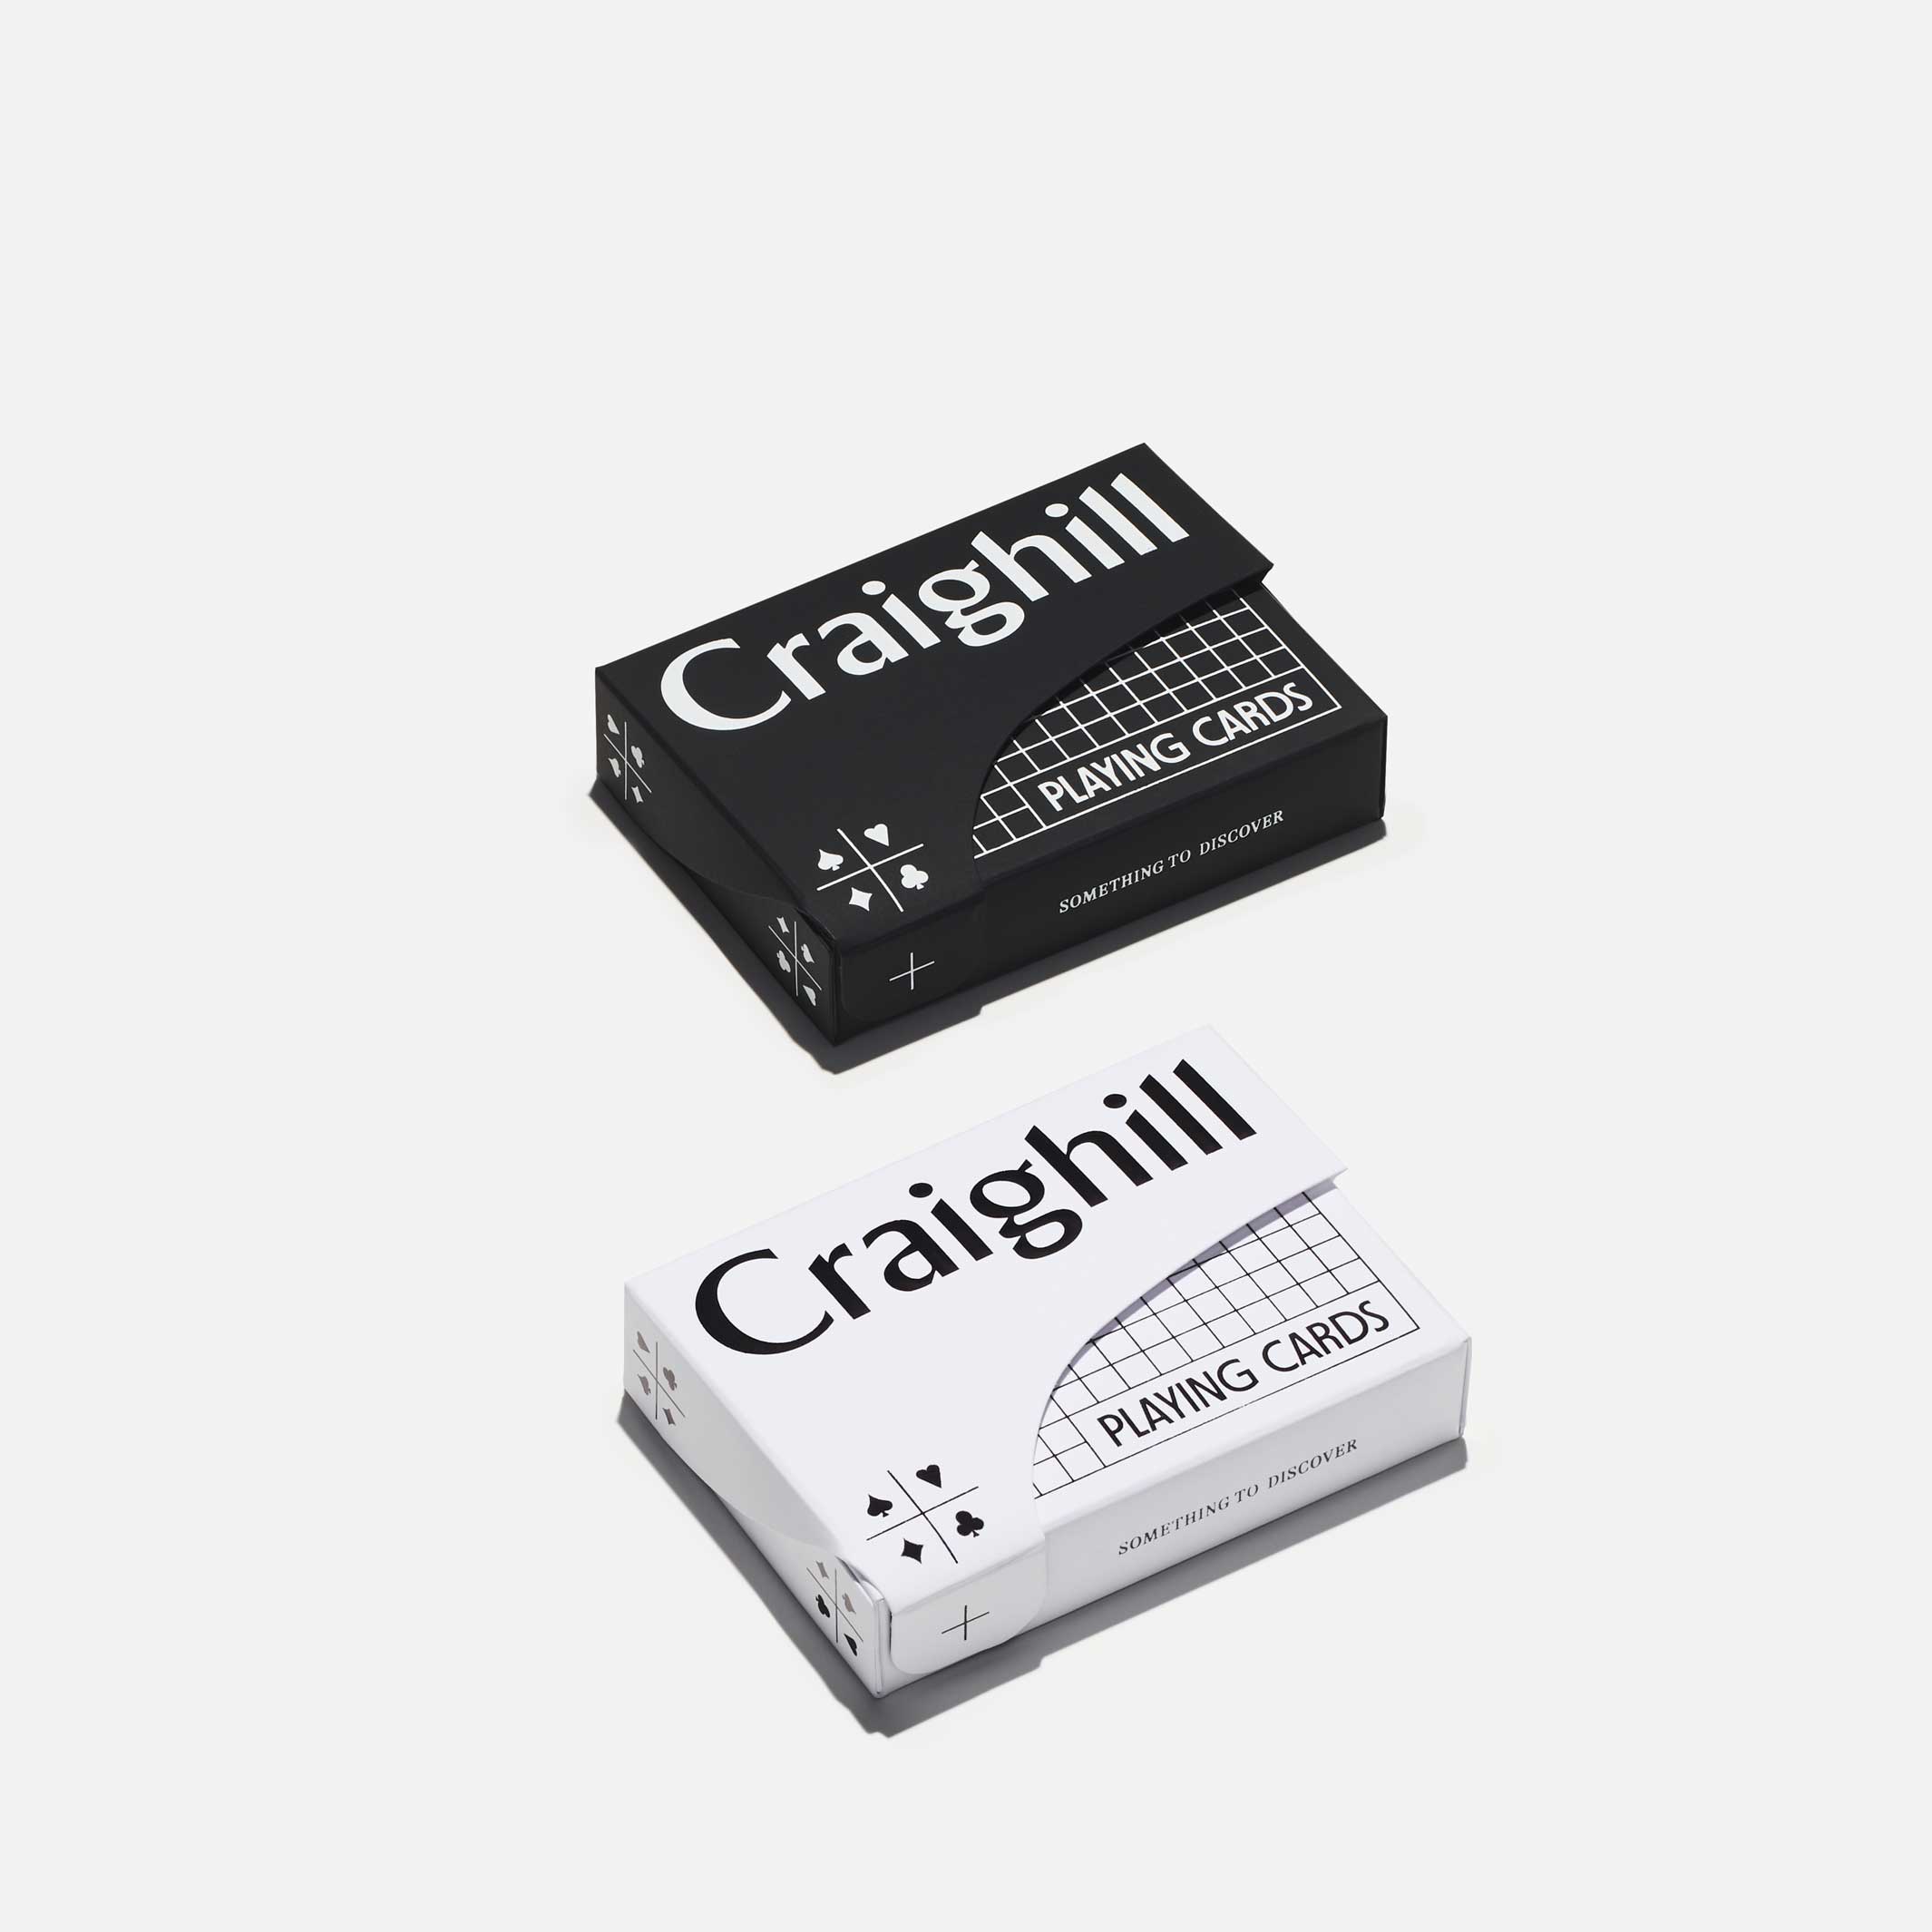 PLAYING CARDS | Orange SPIEL-KARTEN in weisser Verpackung | Craighill